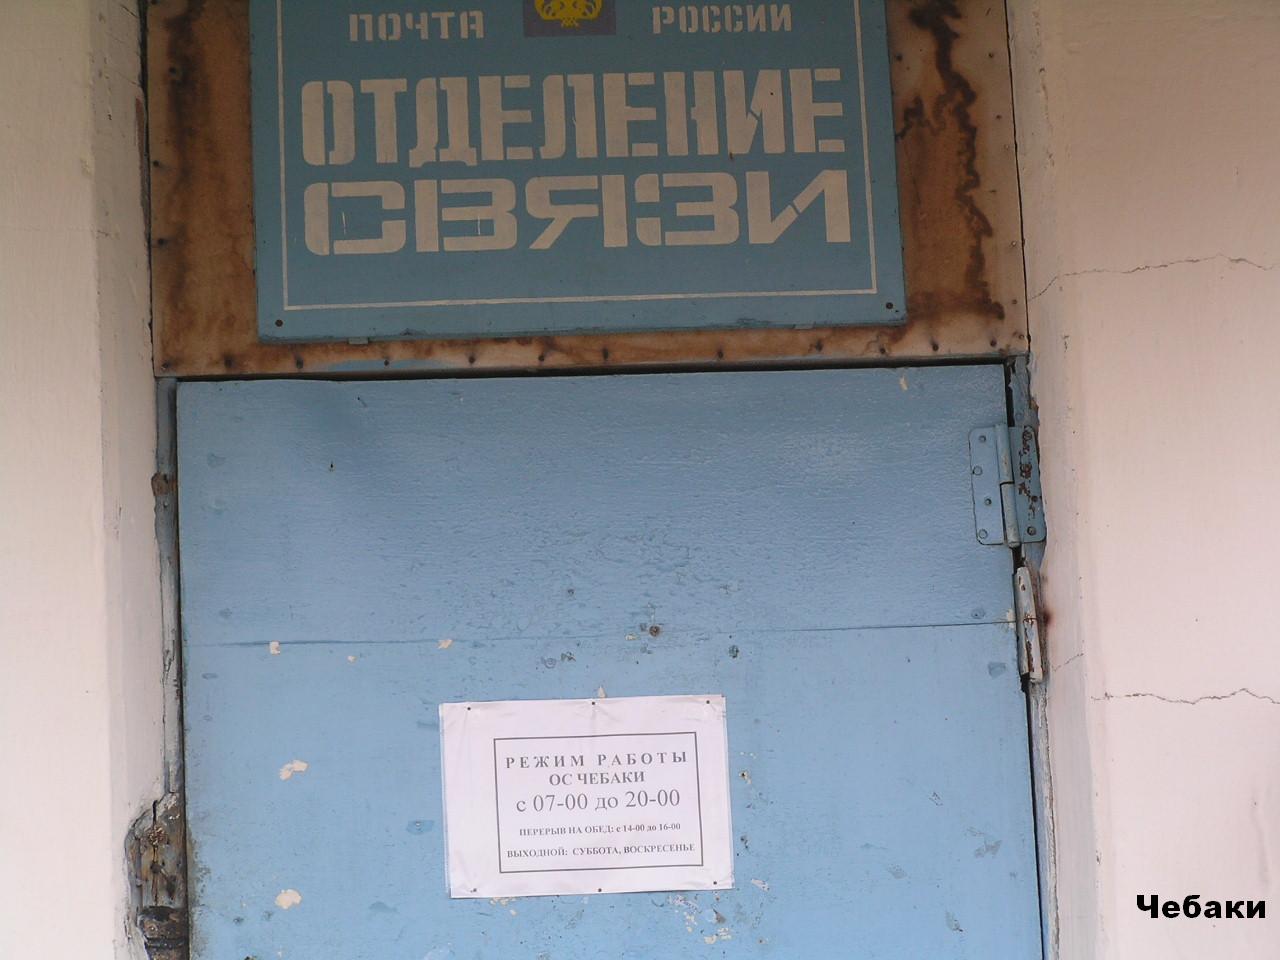 ФАСАД, отделение почтовой связи 632095, Новосибирская обл., Северный р-он, Чебаки